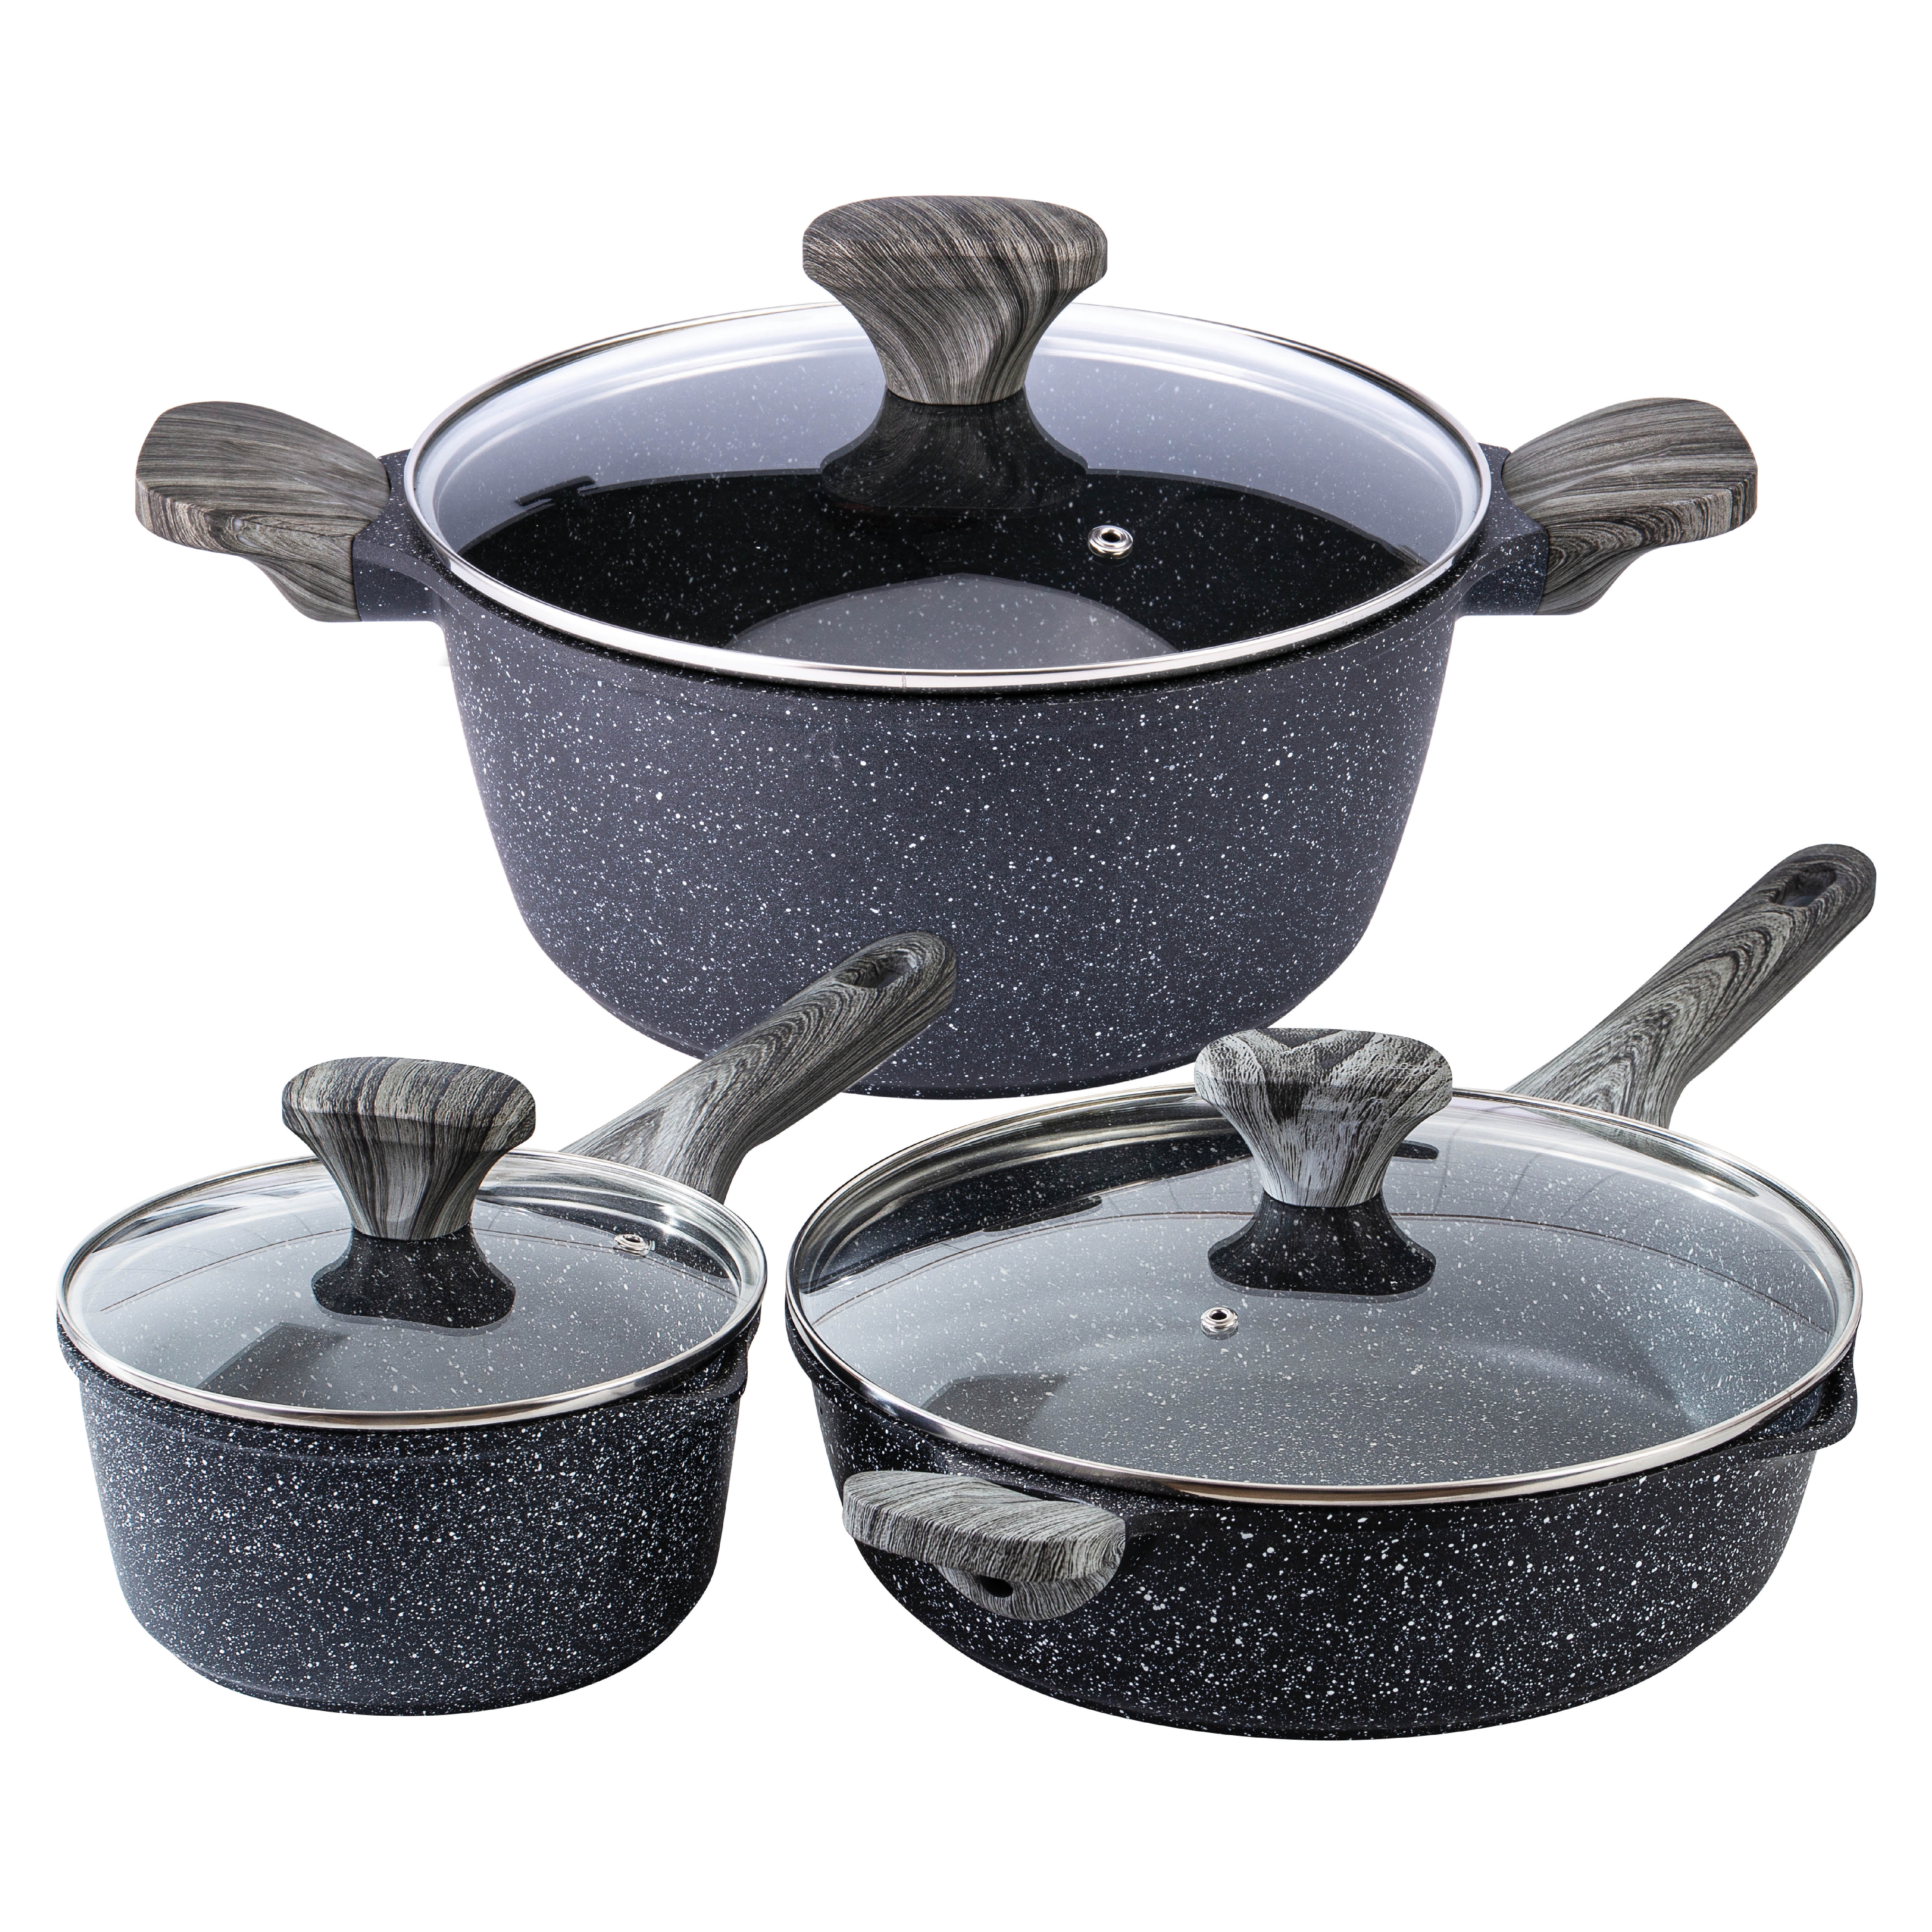 HENSENMEN Pots and Pans Set Nonstick, 6 Pcs of Kitchen Cookware Set, Dishwasher Safe Cooking Pots and Pans Set w/Saute Pan & Saucepan & Casserole Pot